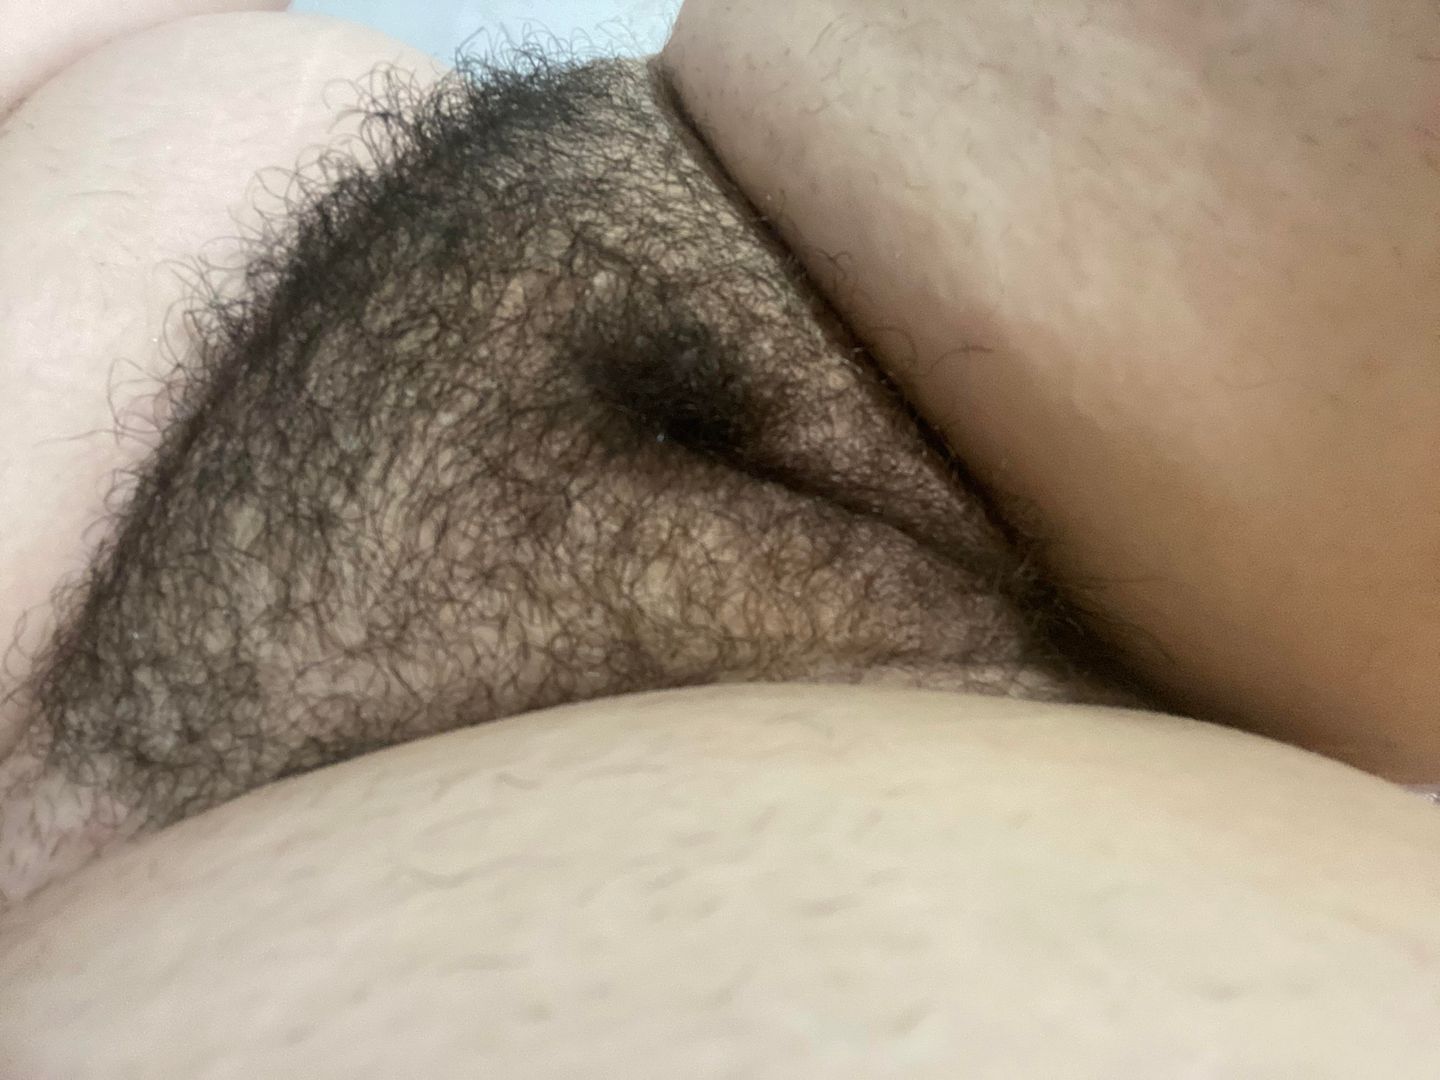 andrew cordon share fat hairy pussy pics photos